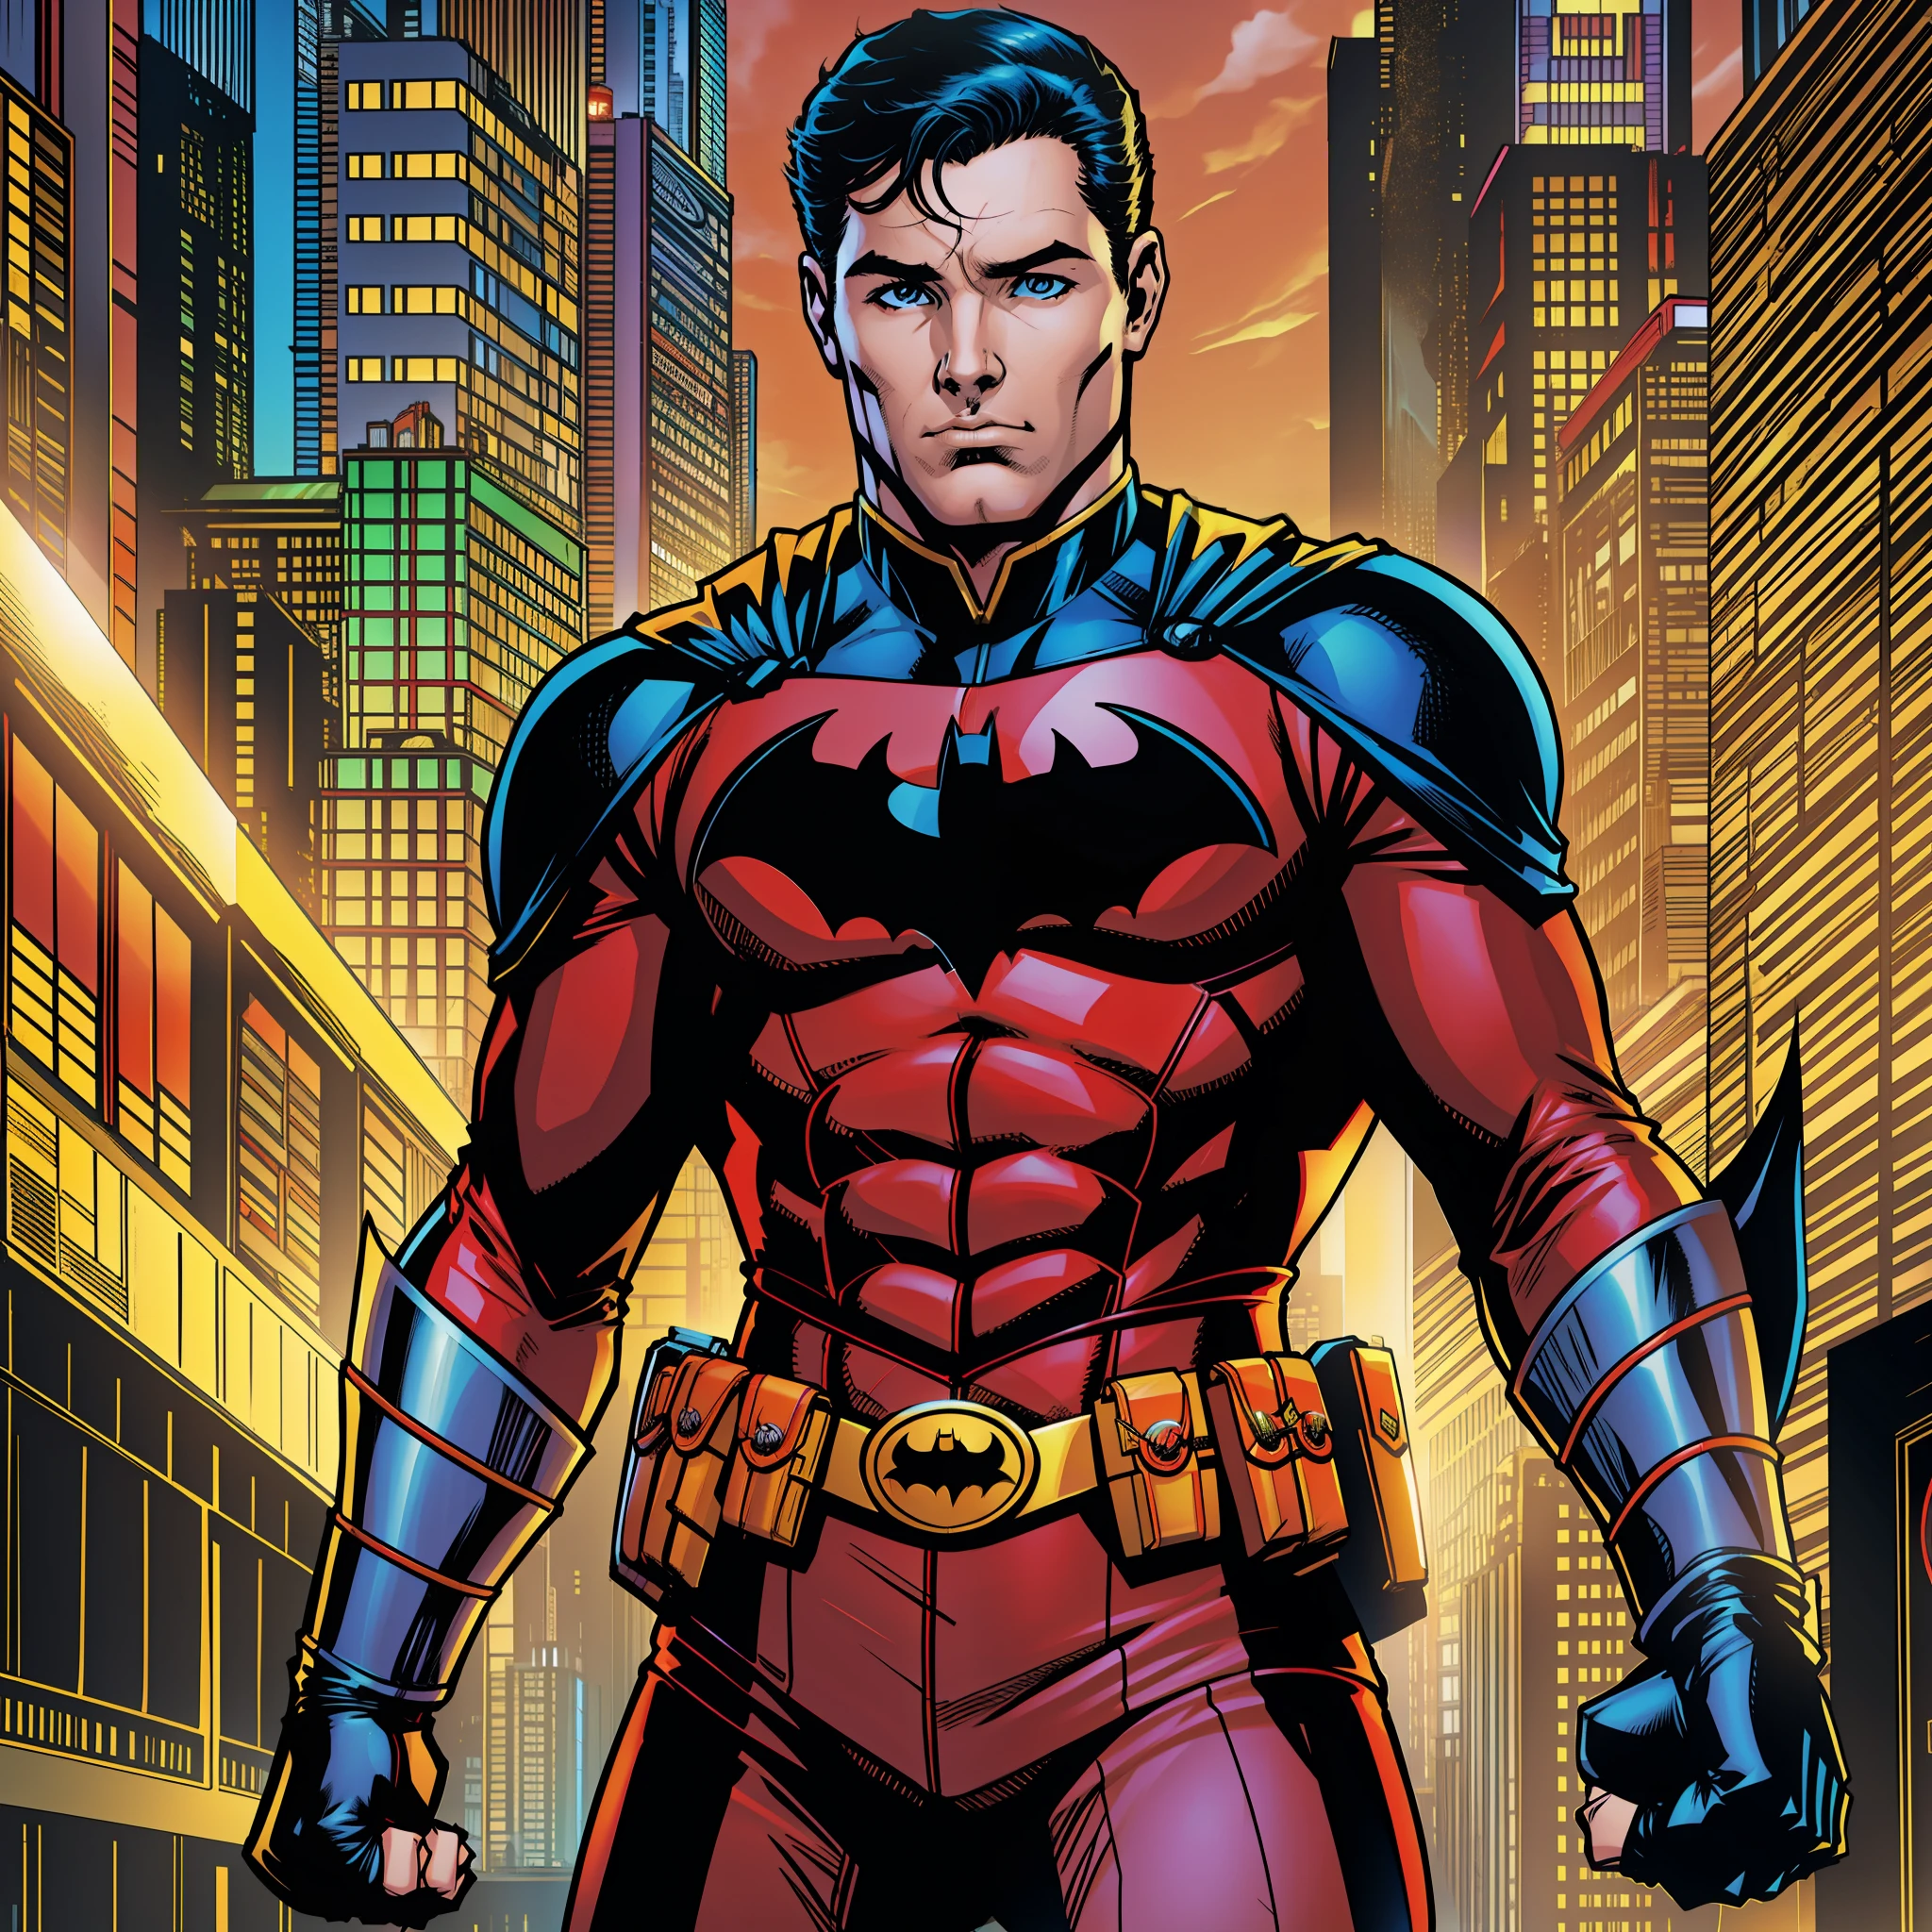 DCコミック ロビン , 赤いボディスーツ , 胸にロビンのロゴ , ソロ DC コミック アート スタイル , バットマンコミックで